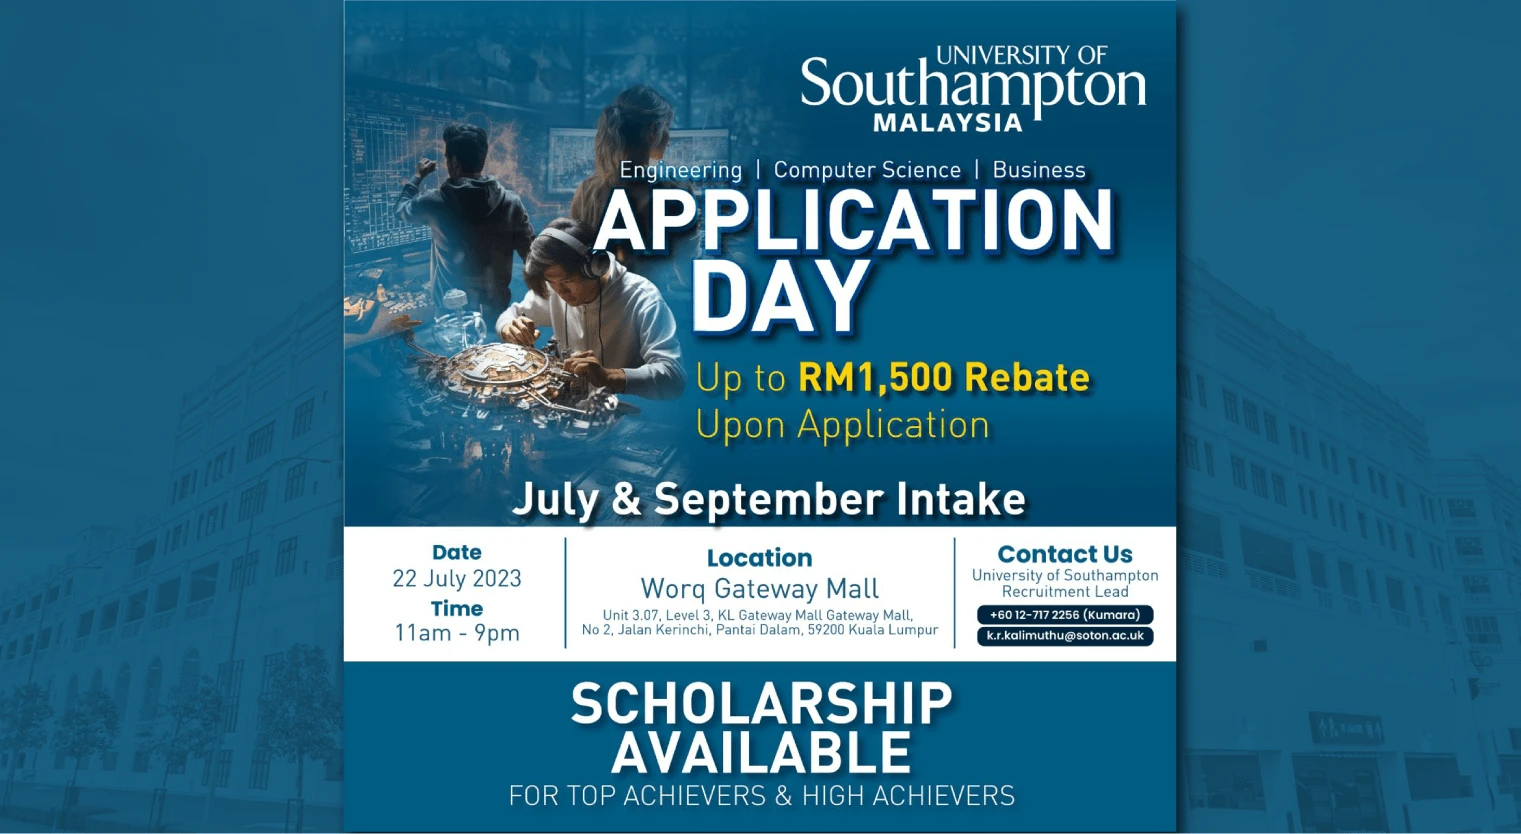 southampton-malaysia-uosm-application-day-22-july-2023